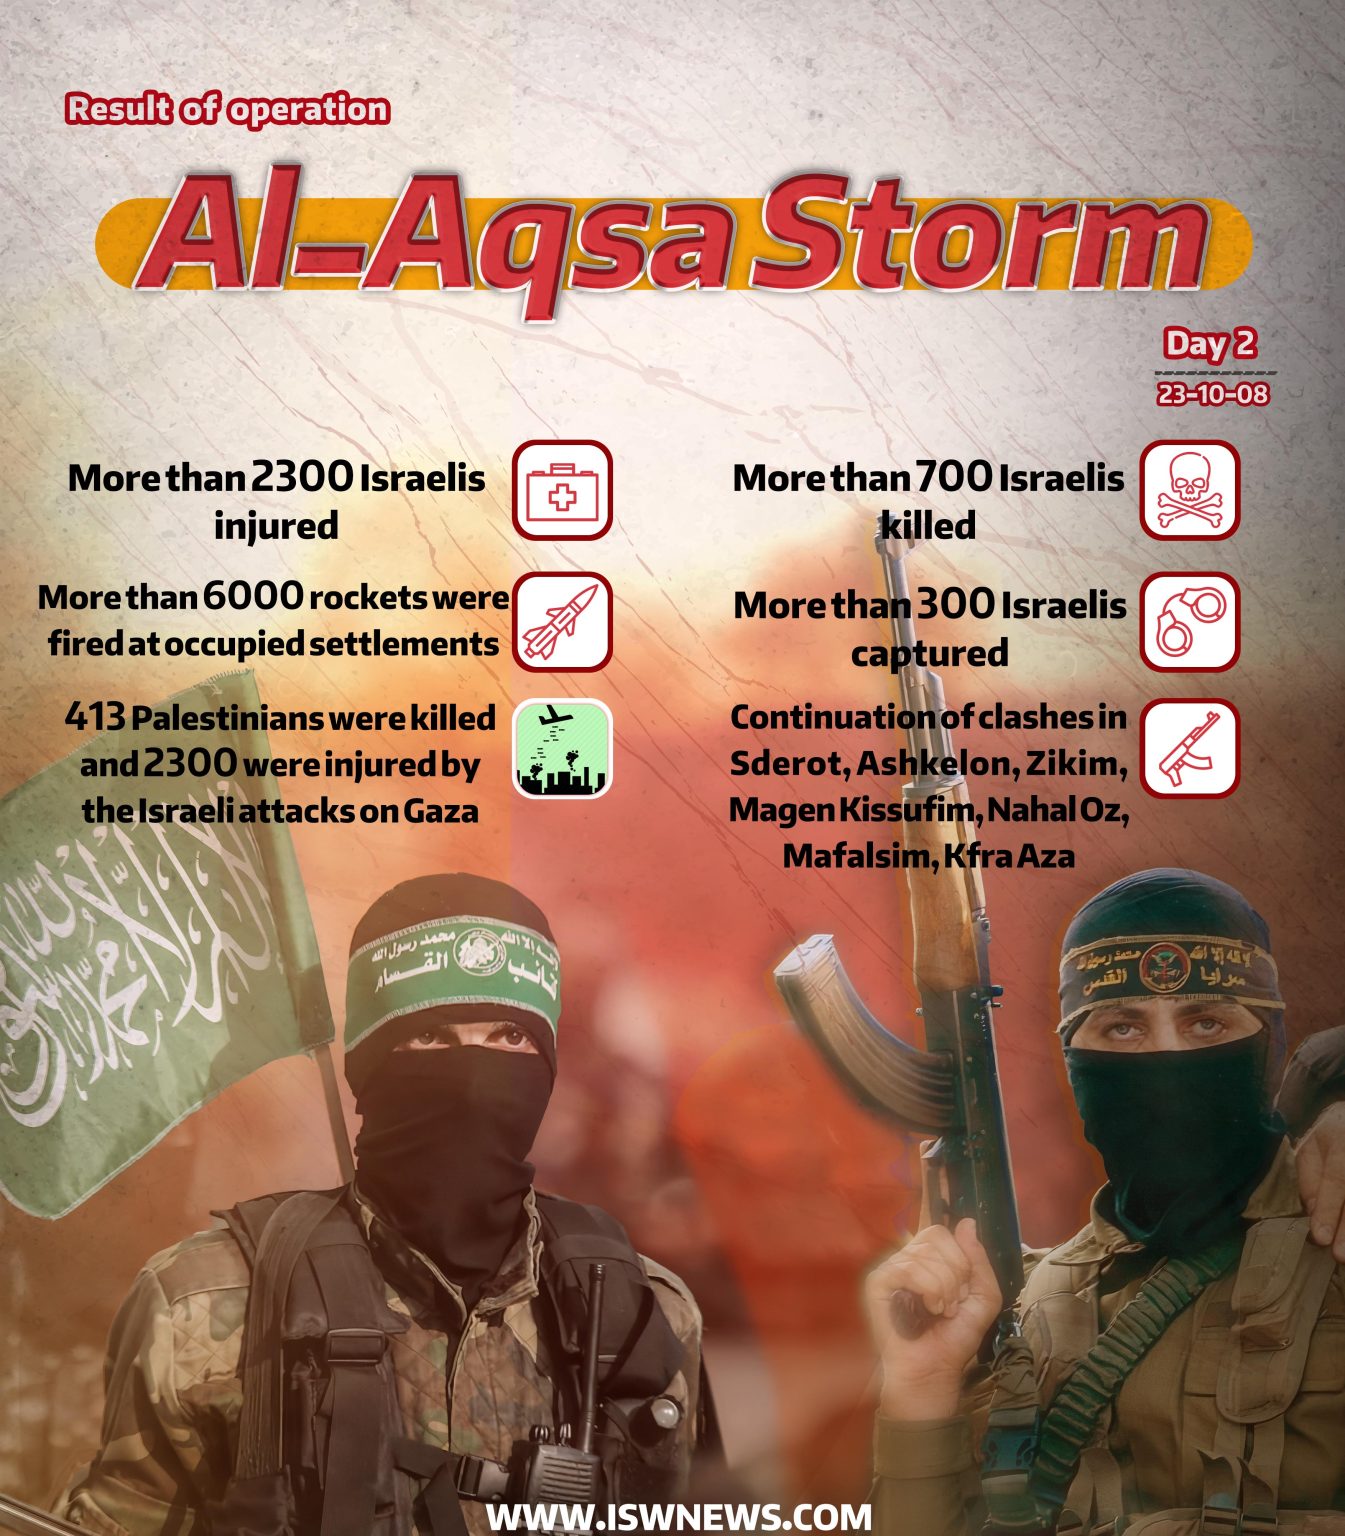 Operation-Al-Aqsa-Storm-Day2-8oct03-en-1345x1536.jpg